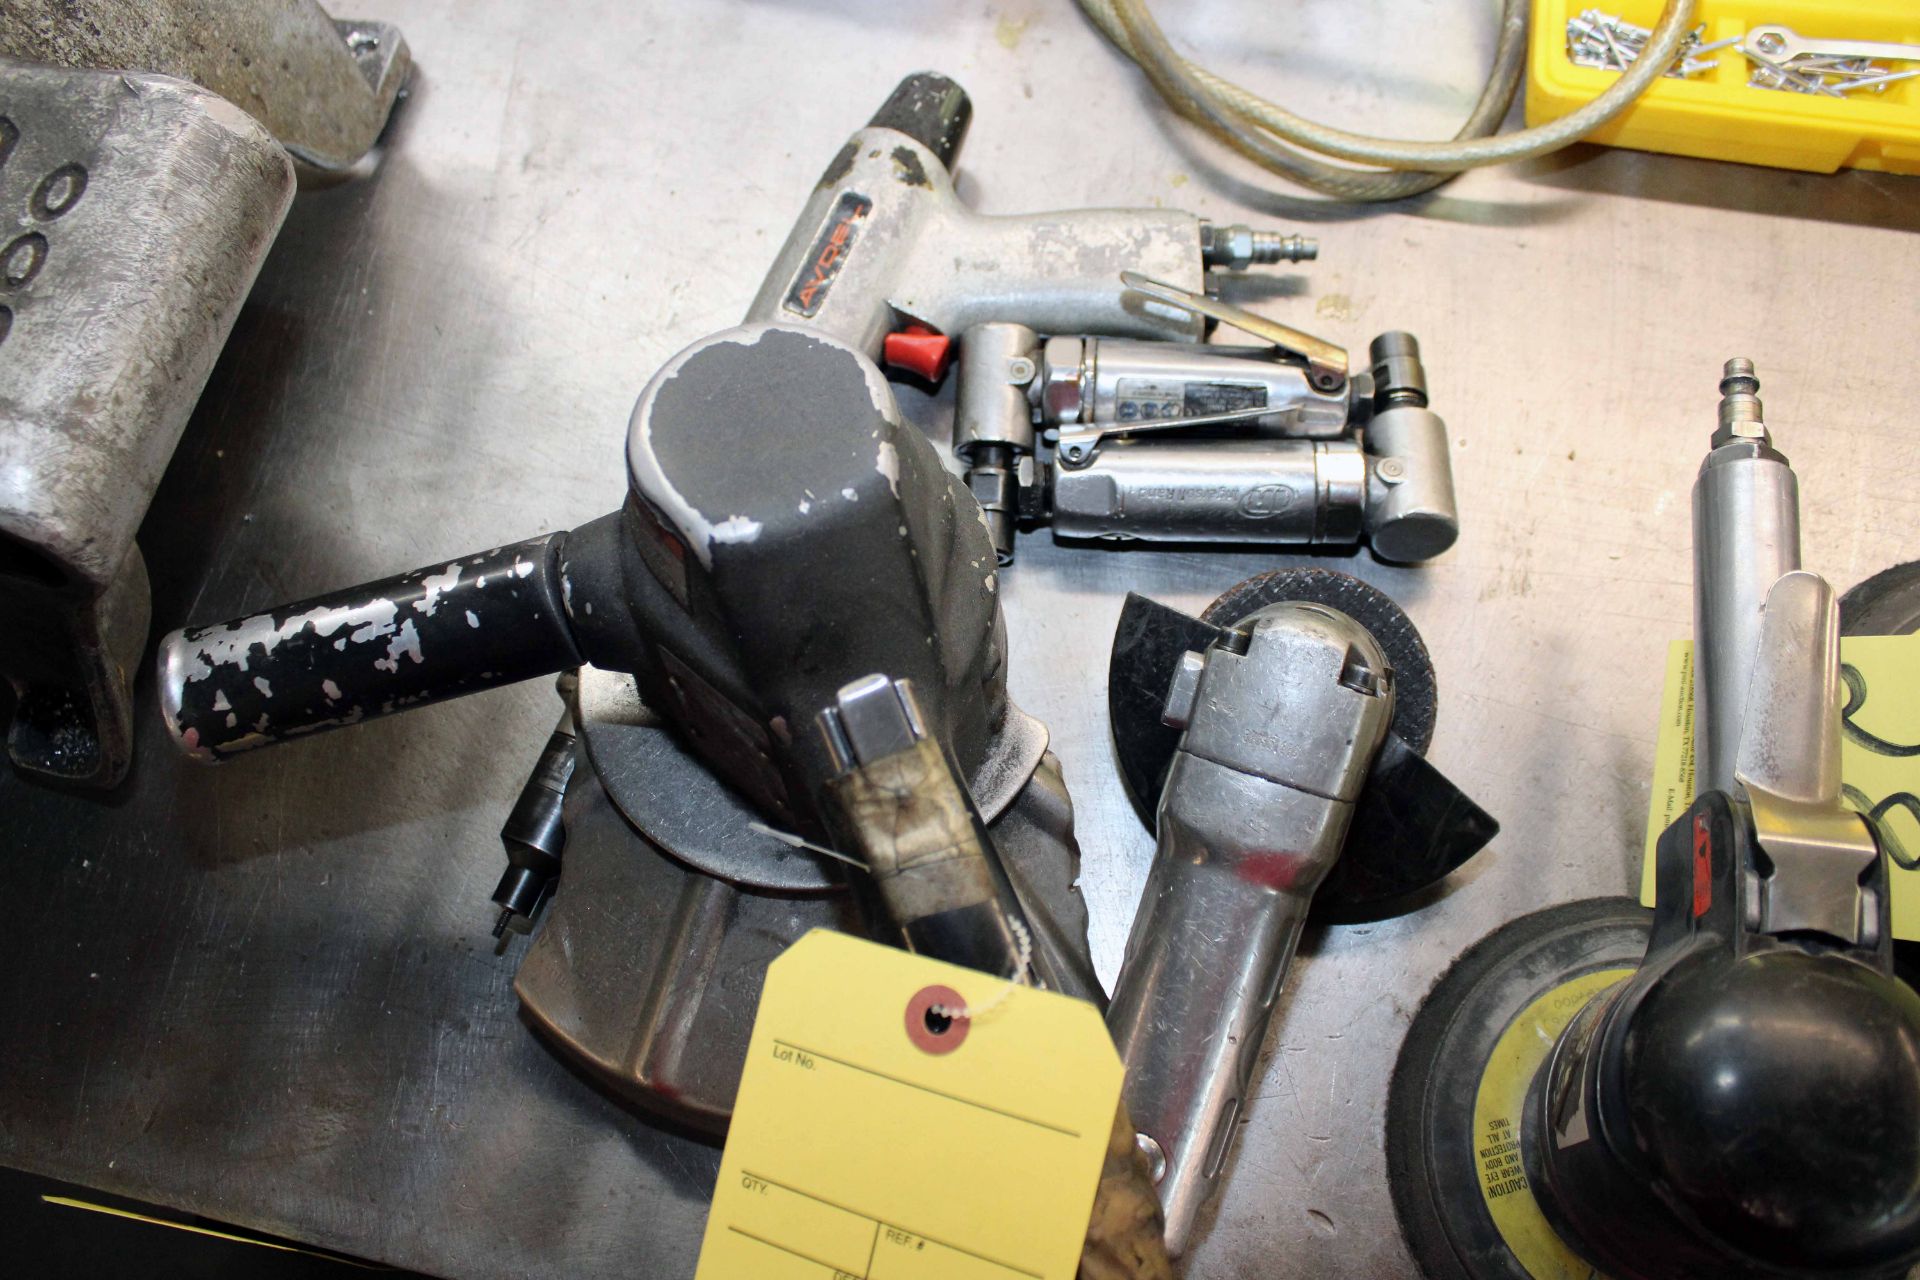 LOT CONSISTING OF: Avdel Rivnut installation tool, Ingersoll Rand 6" grinder, (2) Ingersoll Rand 1/